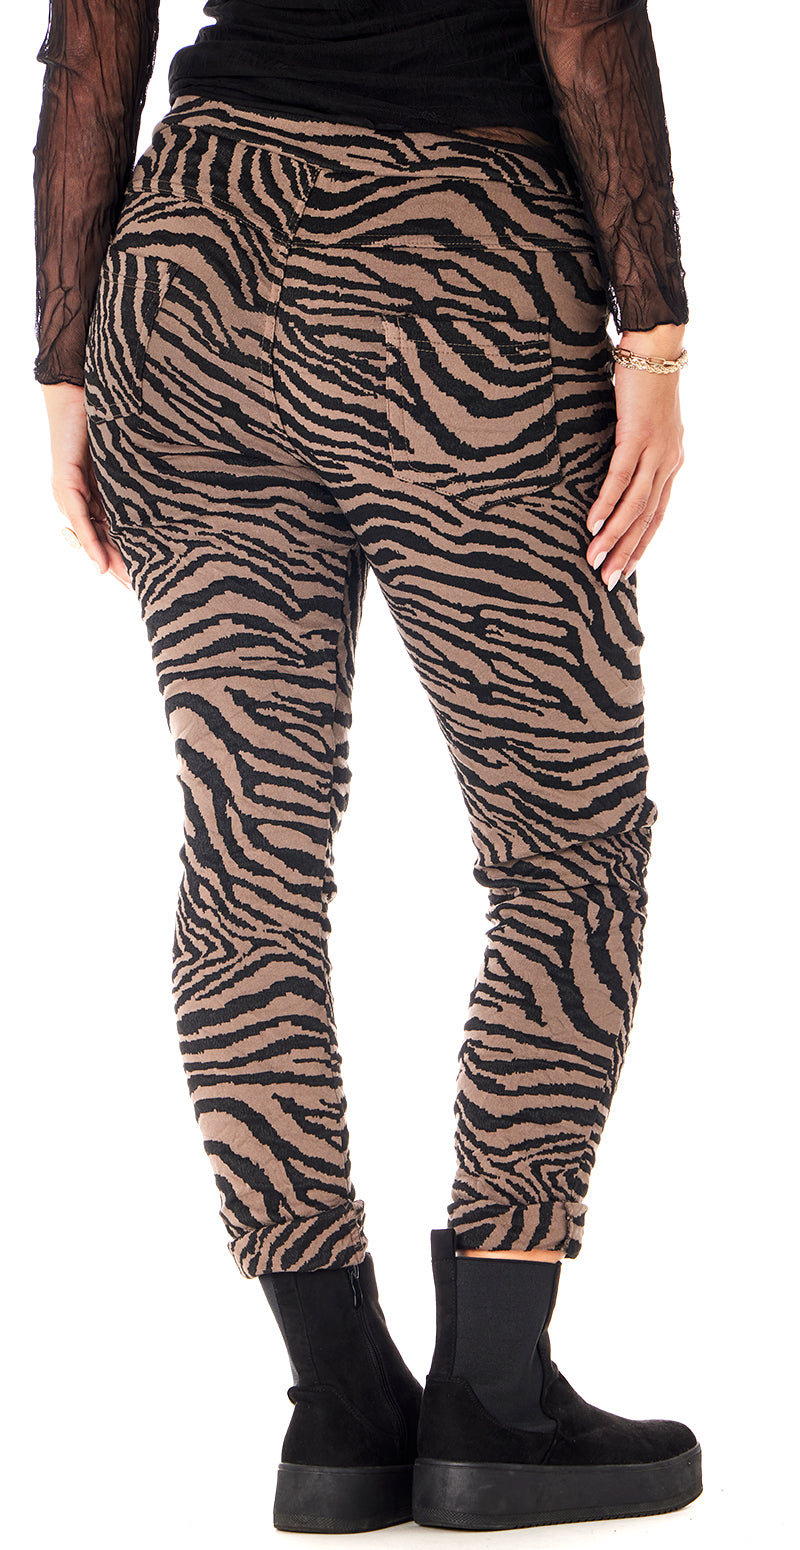 Bukser med zebra print mocca Likelondon